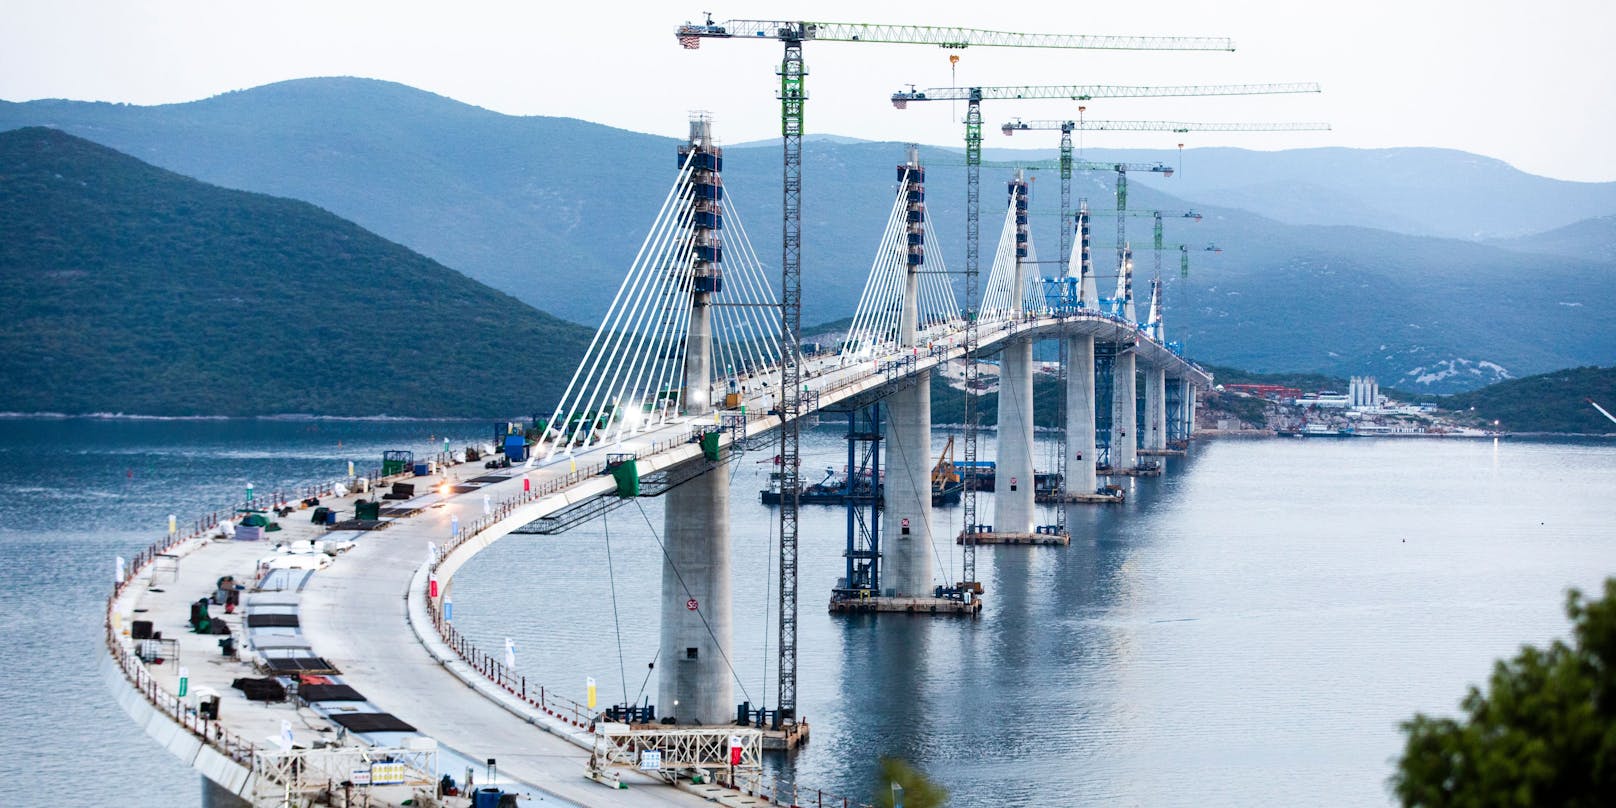 Am Mittwoch wurde das letzte Teilstück der Pelješac-Brücke in Kroatien montiert.